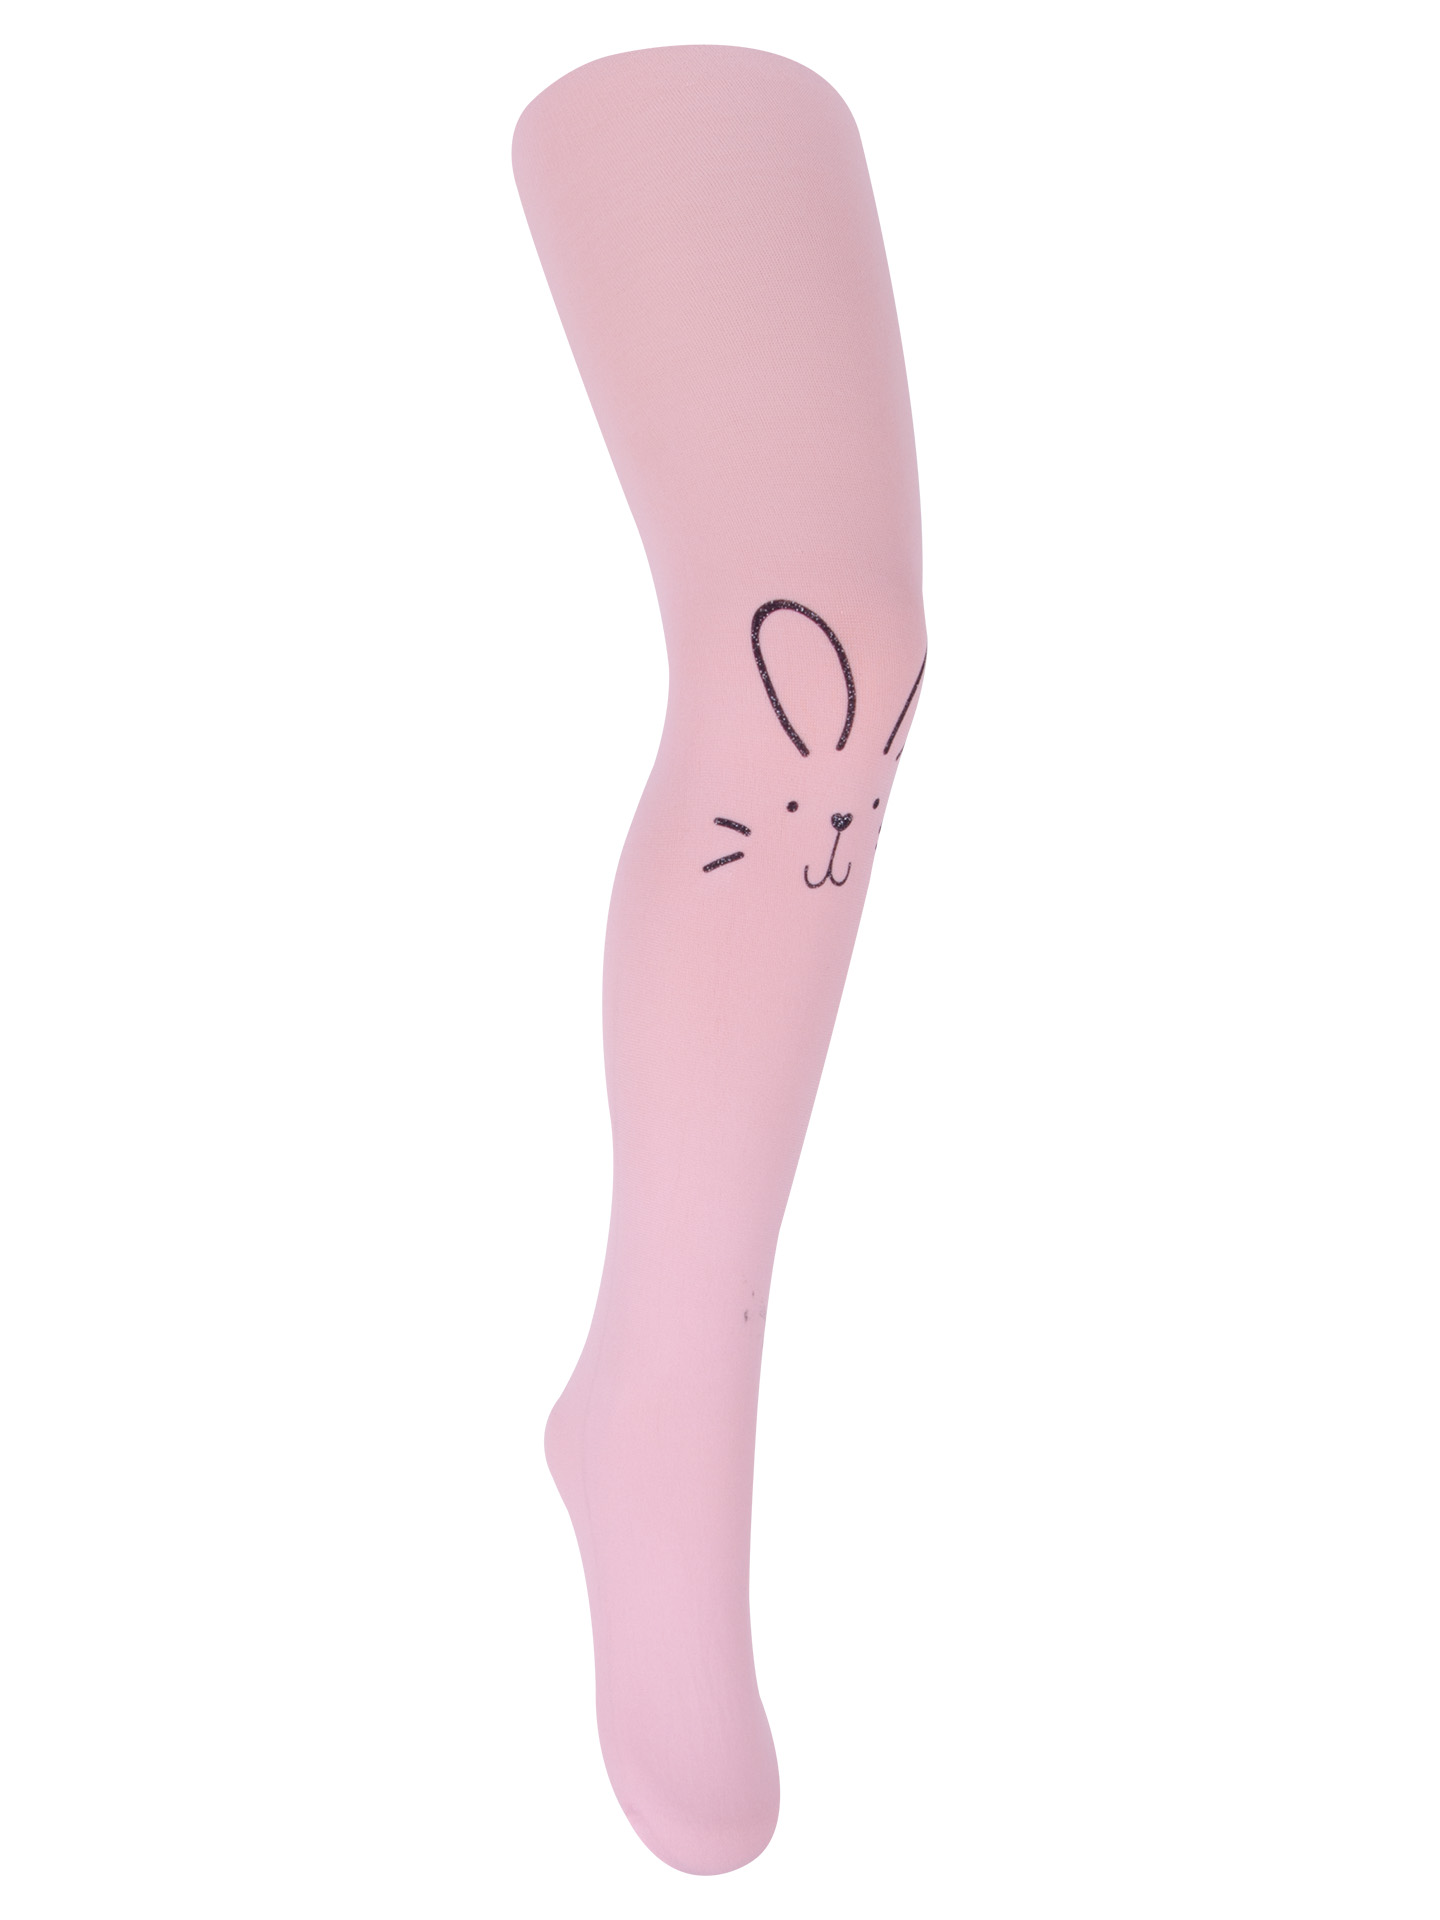 Yo dětské dívčí punčocháče s králíčkem z mikrovlákna pudrově růžové, velikost: 92-98